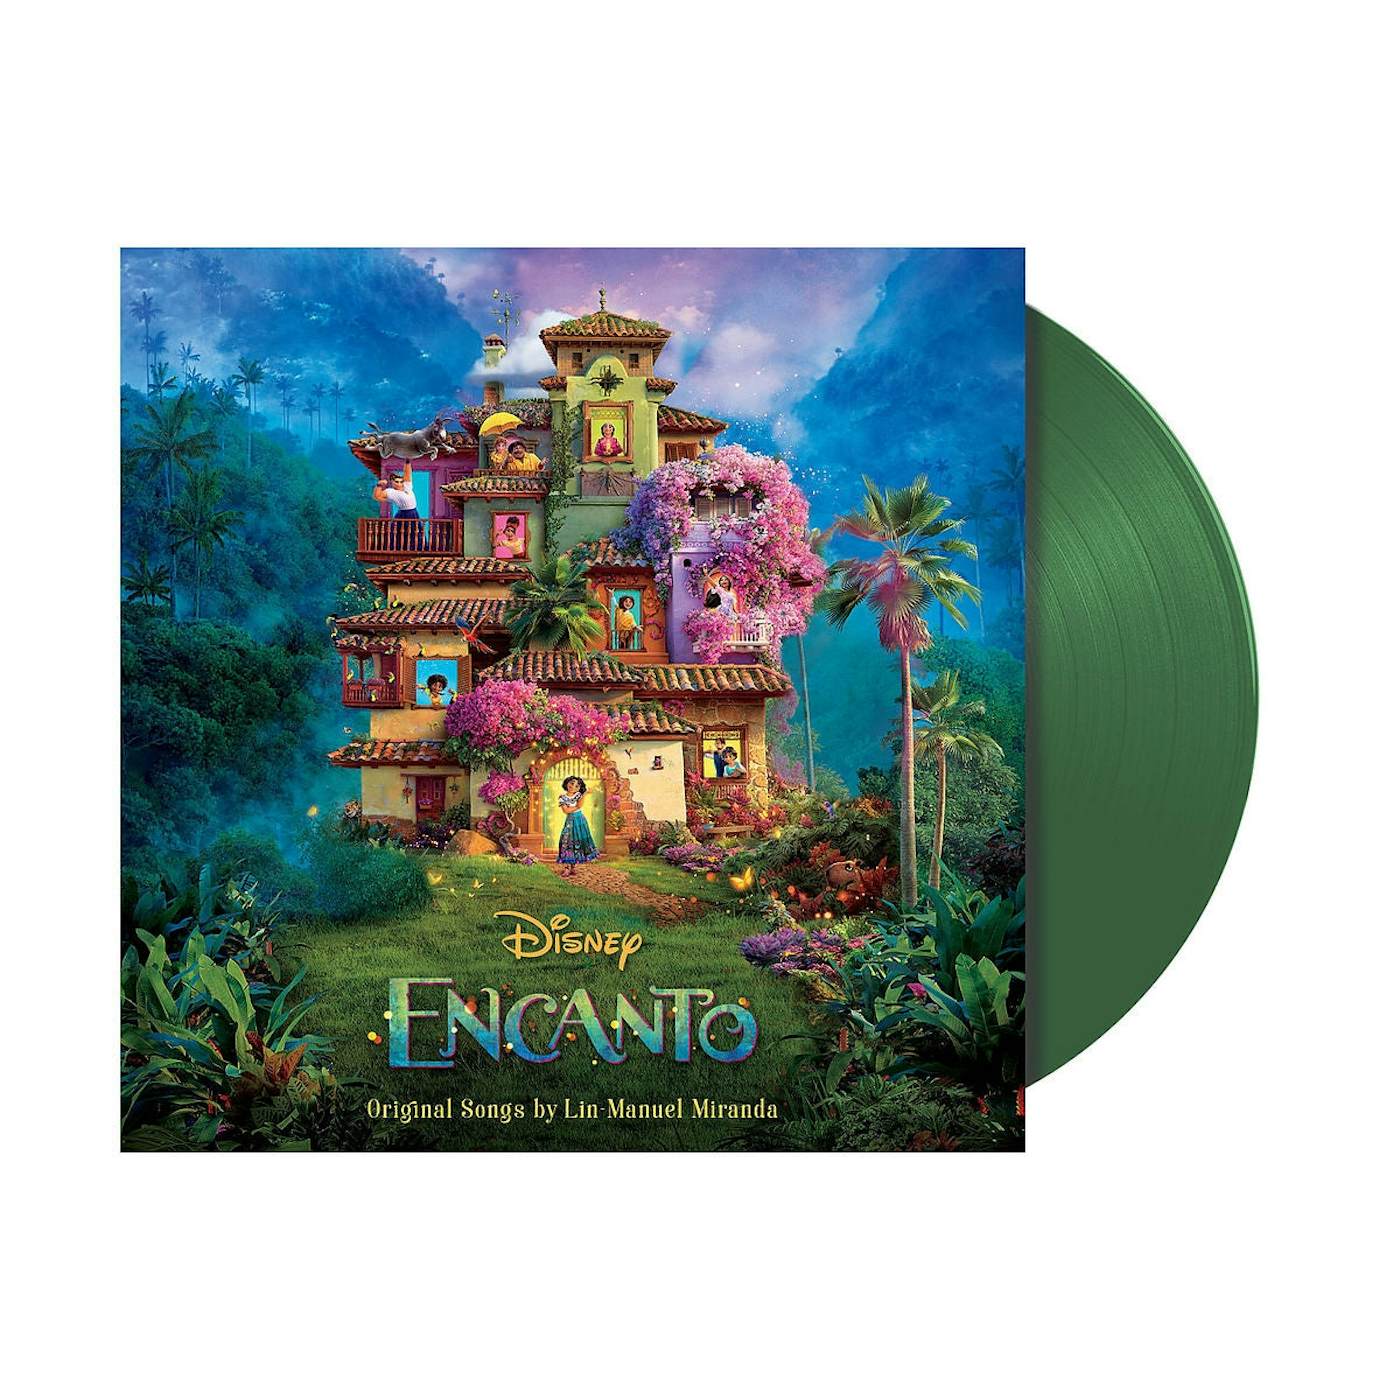 Encanto / O.S.T. - Encanto Soundtrack [French Version - Bande Originale  Francaise Du Film] - CD